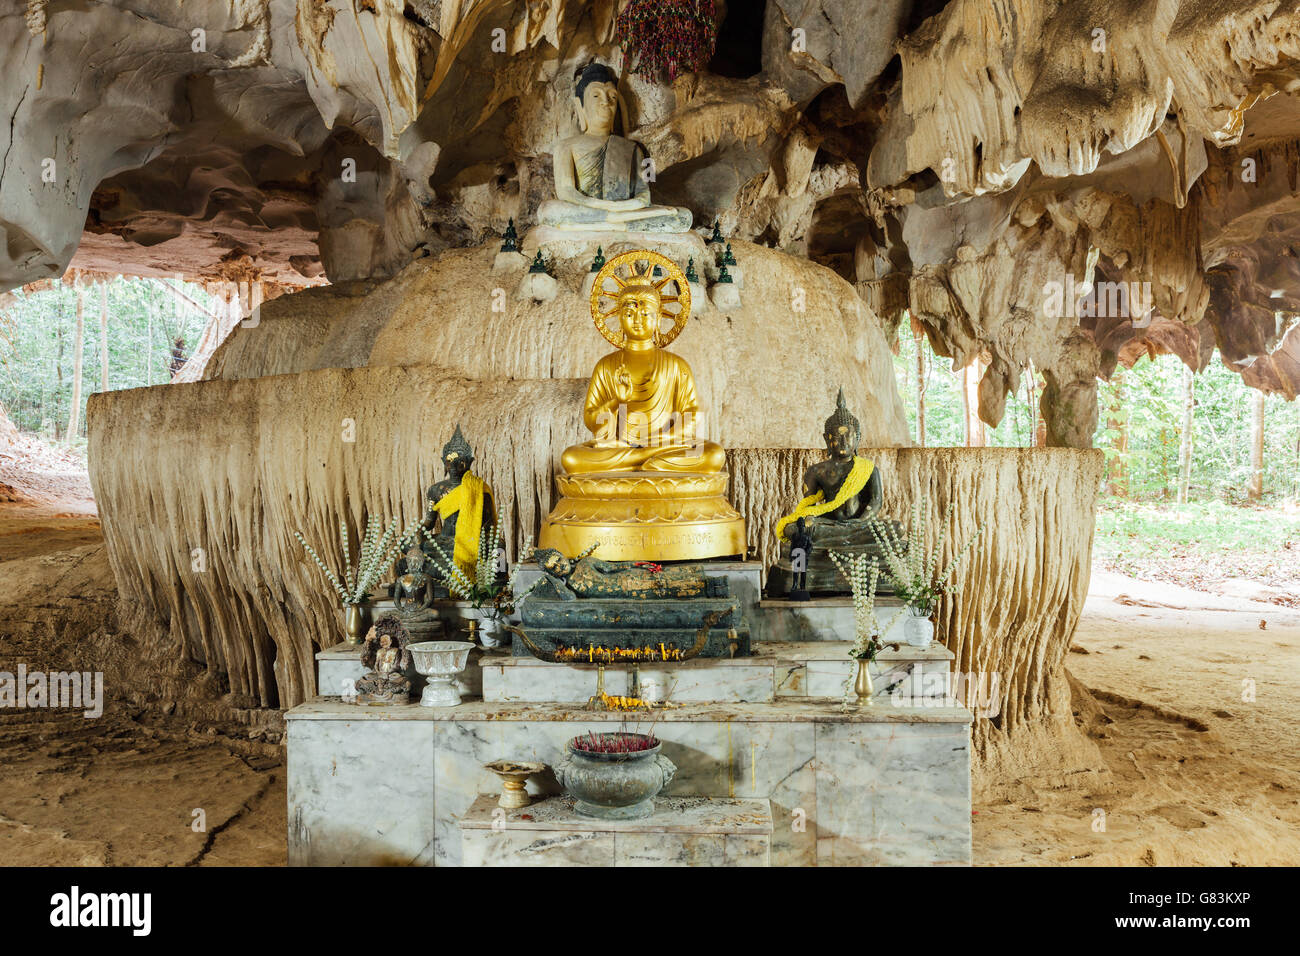 Immagine del Buddha nella grotta. Tiger tempio nella grotta, Krabi, Thailandia. Foto Stock